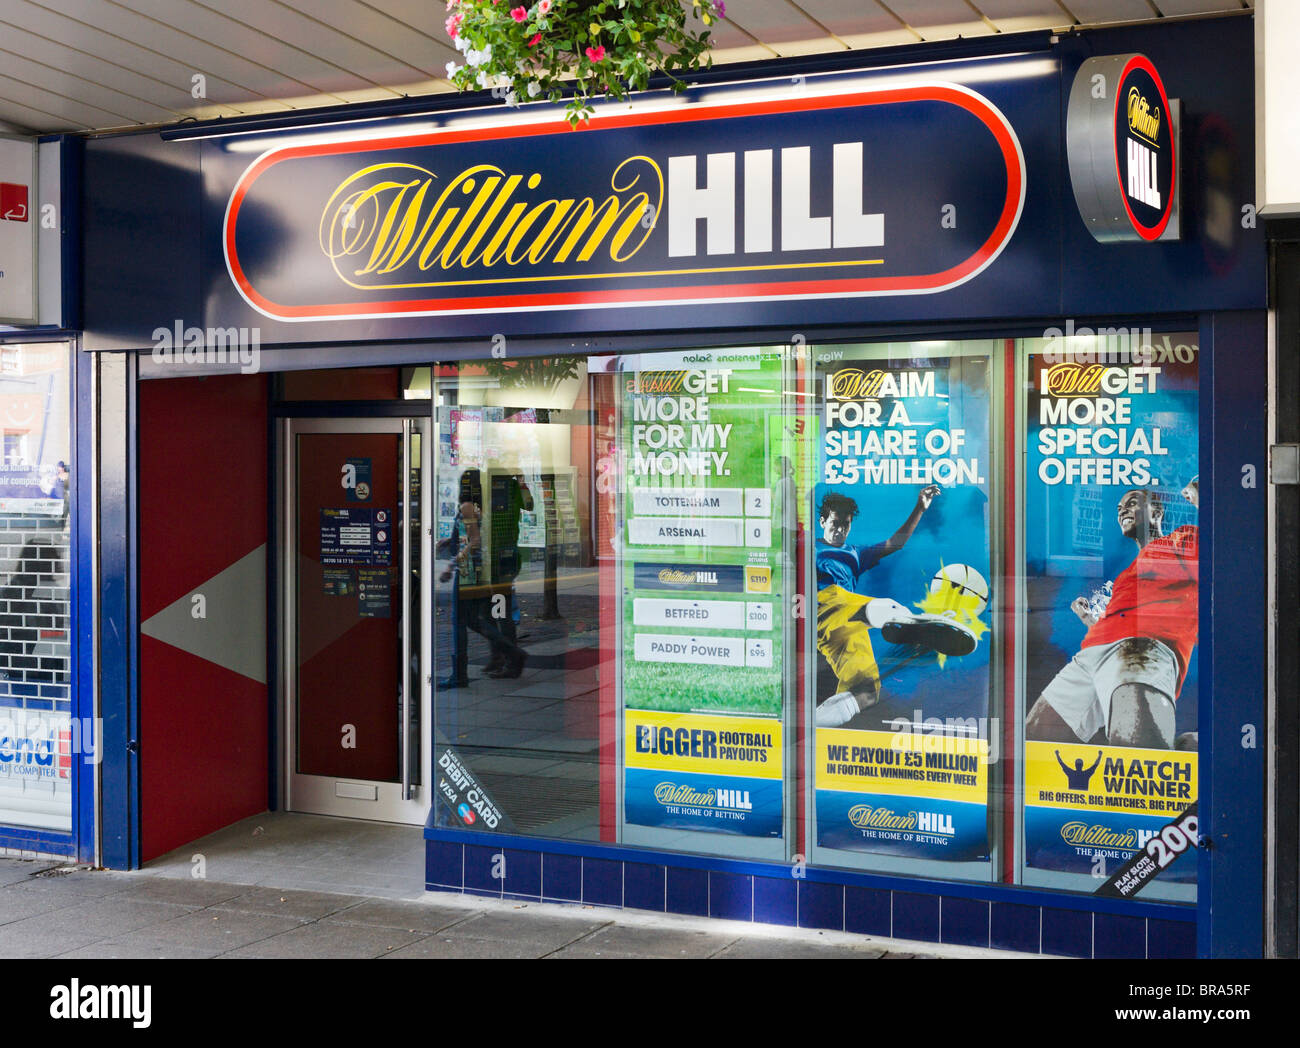 La tienda de apuestas William Hill en el centro de la ciudad de Huddersfield, West Yorkshire, Inglaterra, Reino Unido. Foto de stock